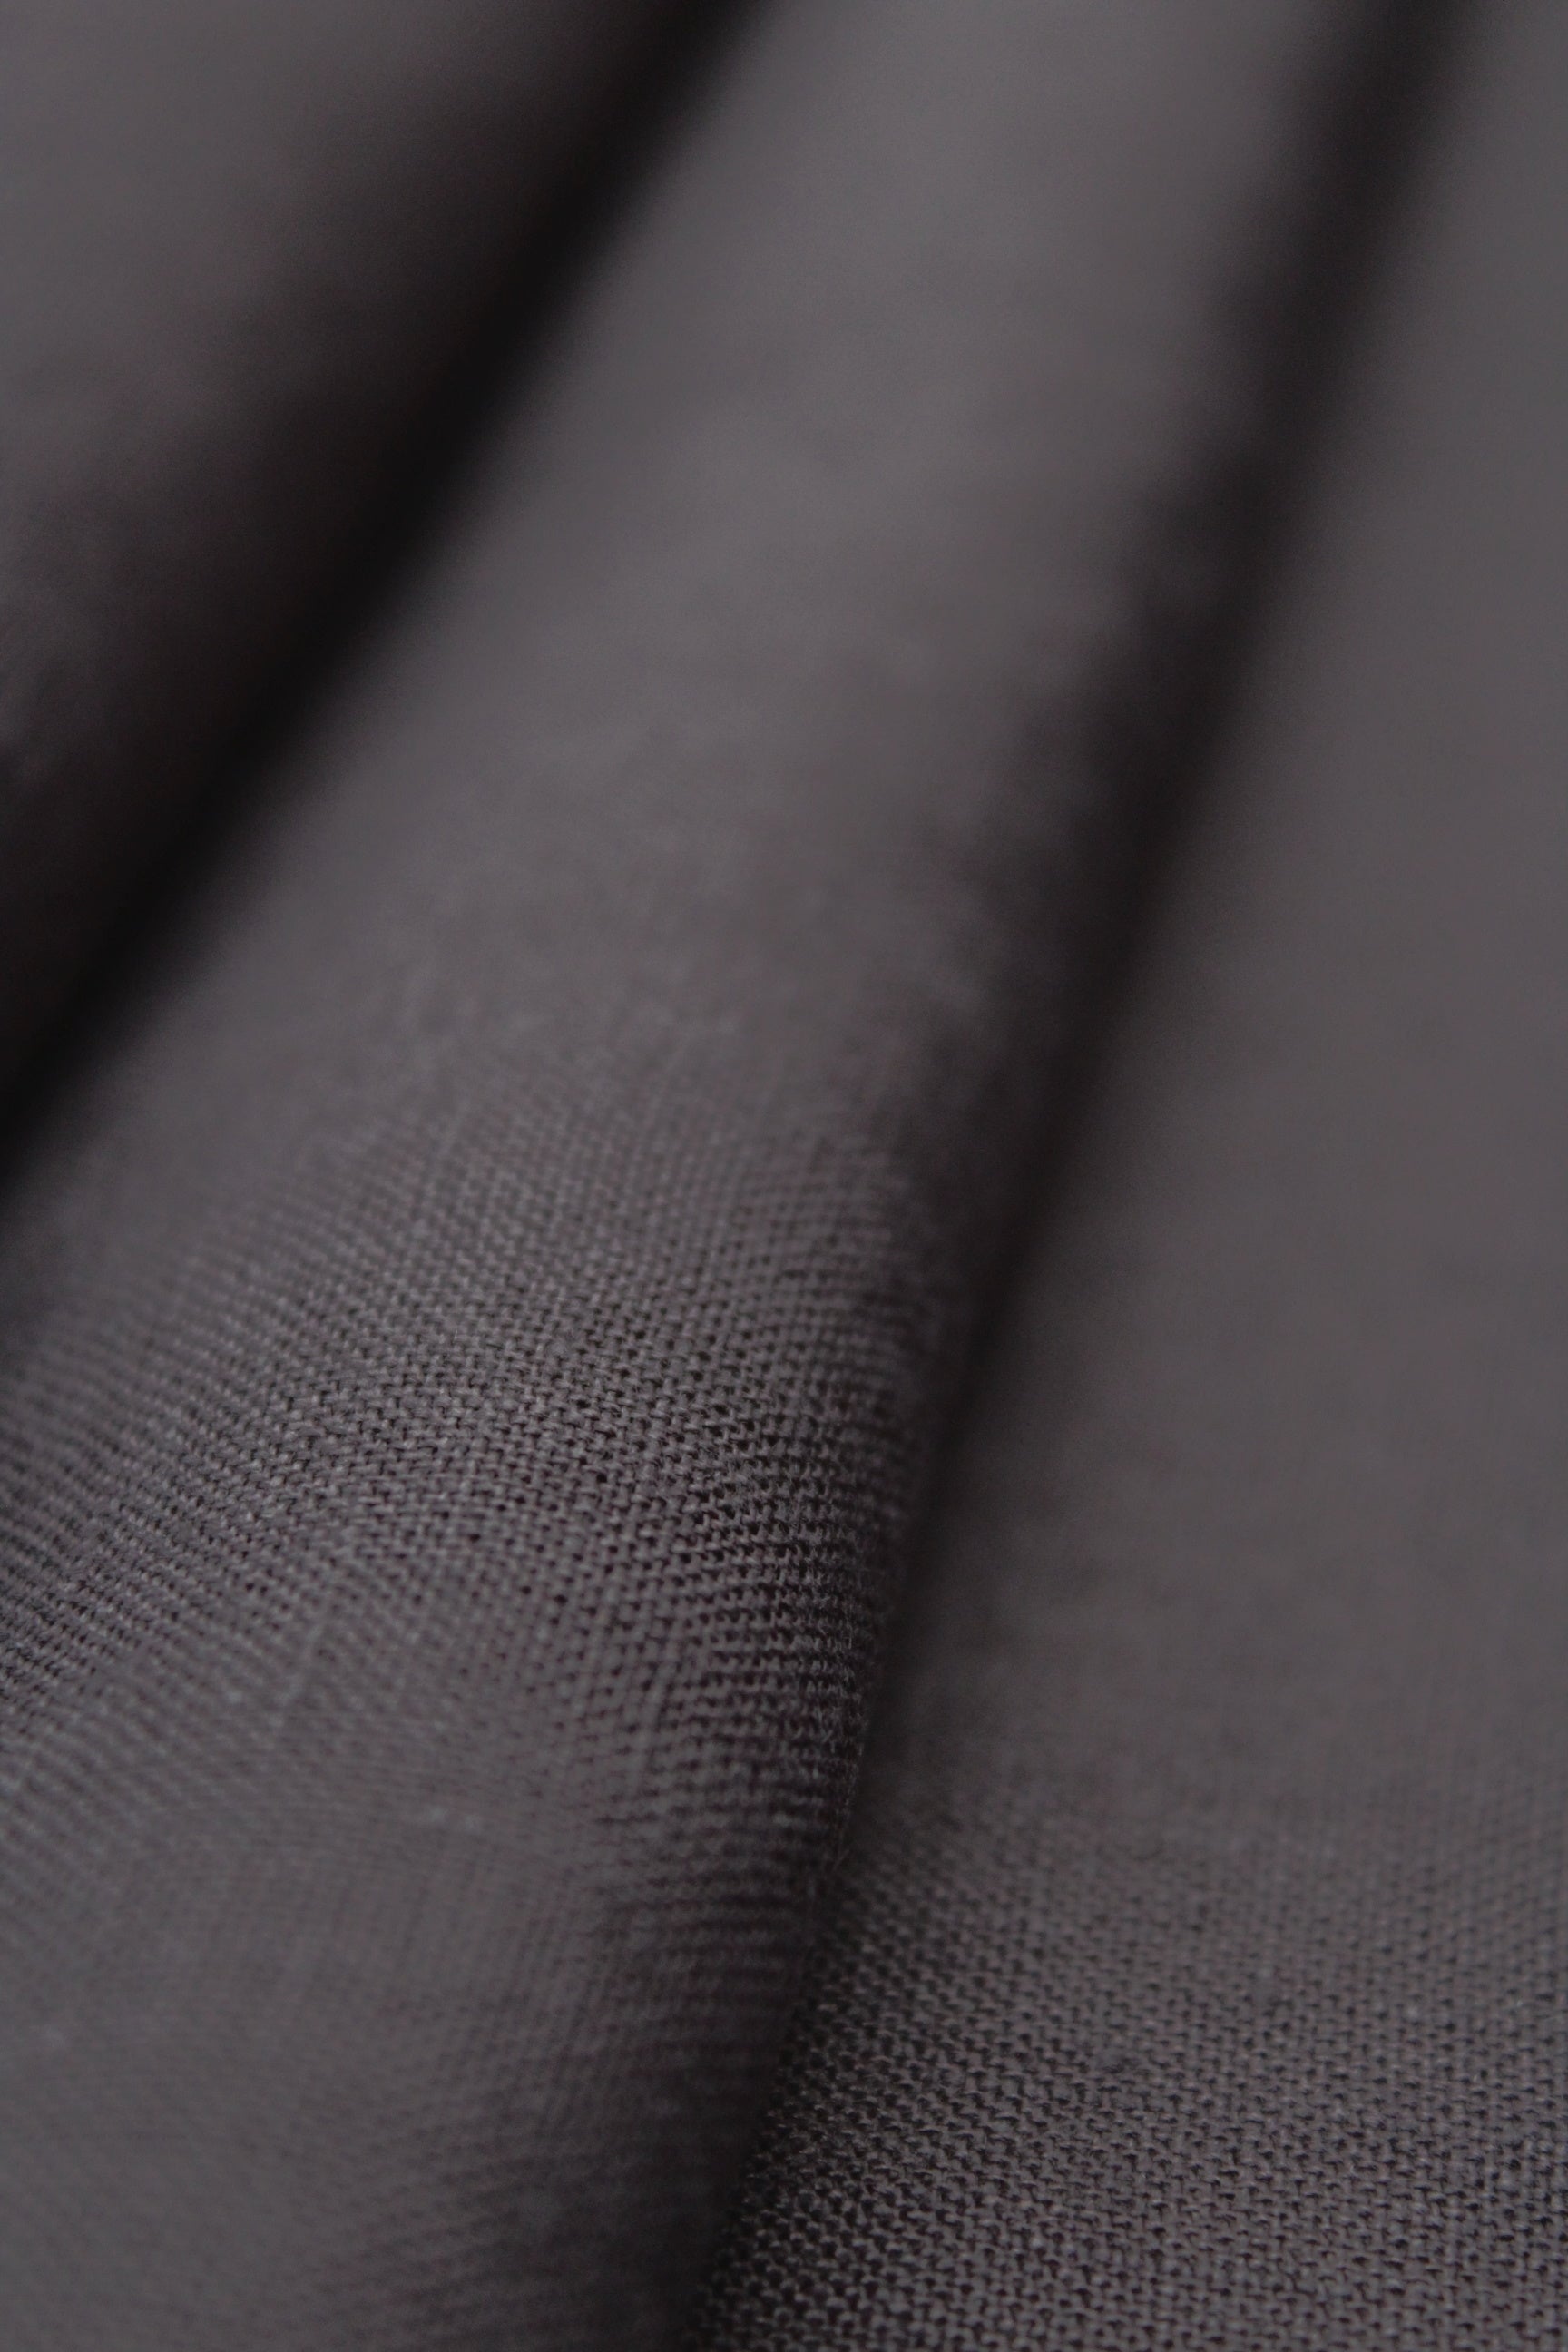 Siena Off Black Linen Fabric - AVLEN